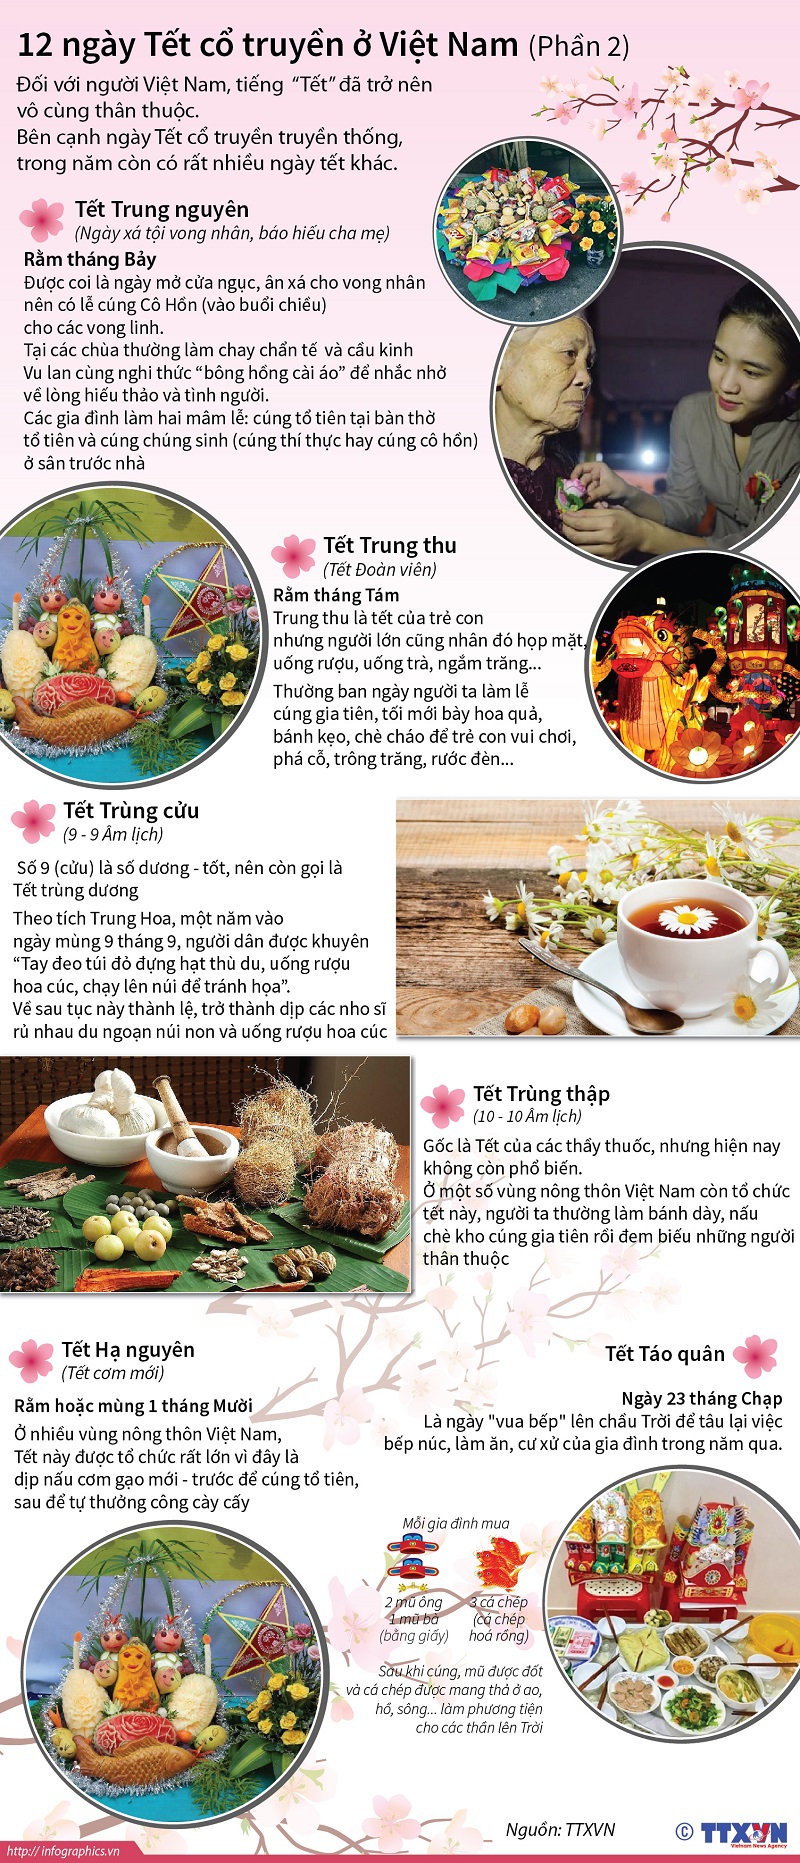 [Infographics] Những ngày Tết cổ truyền của Việt Nam (phần 2) - Ảnh 1